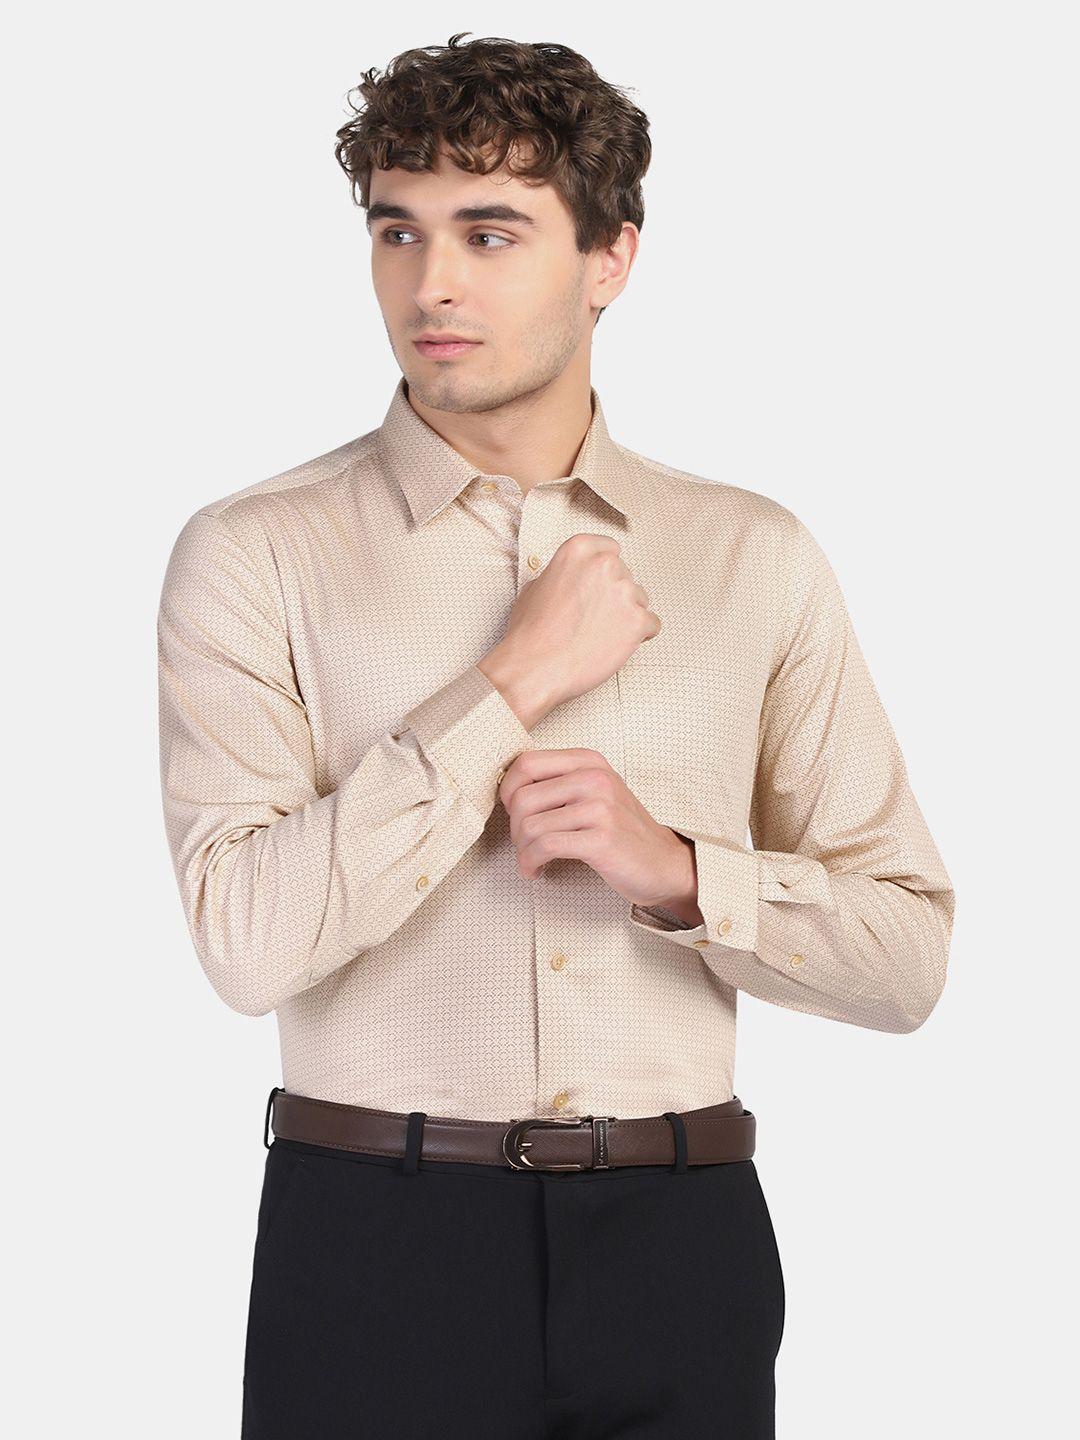 blackberrys-men-slim-fit-pure-cotton-formal-shirt